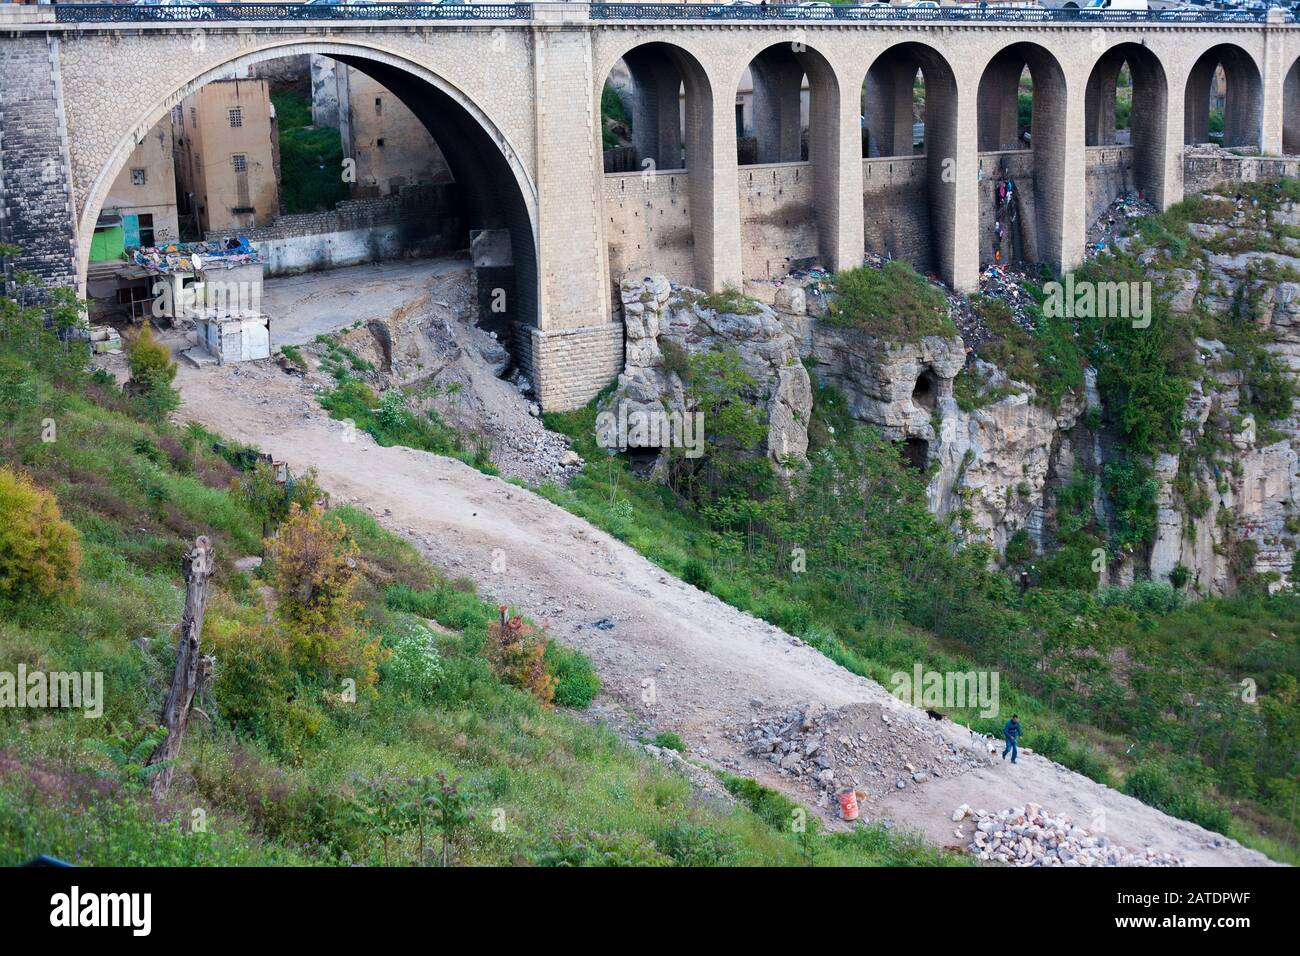 Les ponts reliant les deux côtés de la gorge à la casbah sont une caractéristique célèbre de Constantin, une ville ancienne dans le nord de l'Algérie. Banque D'Images